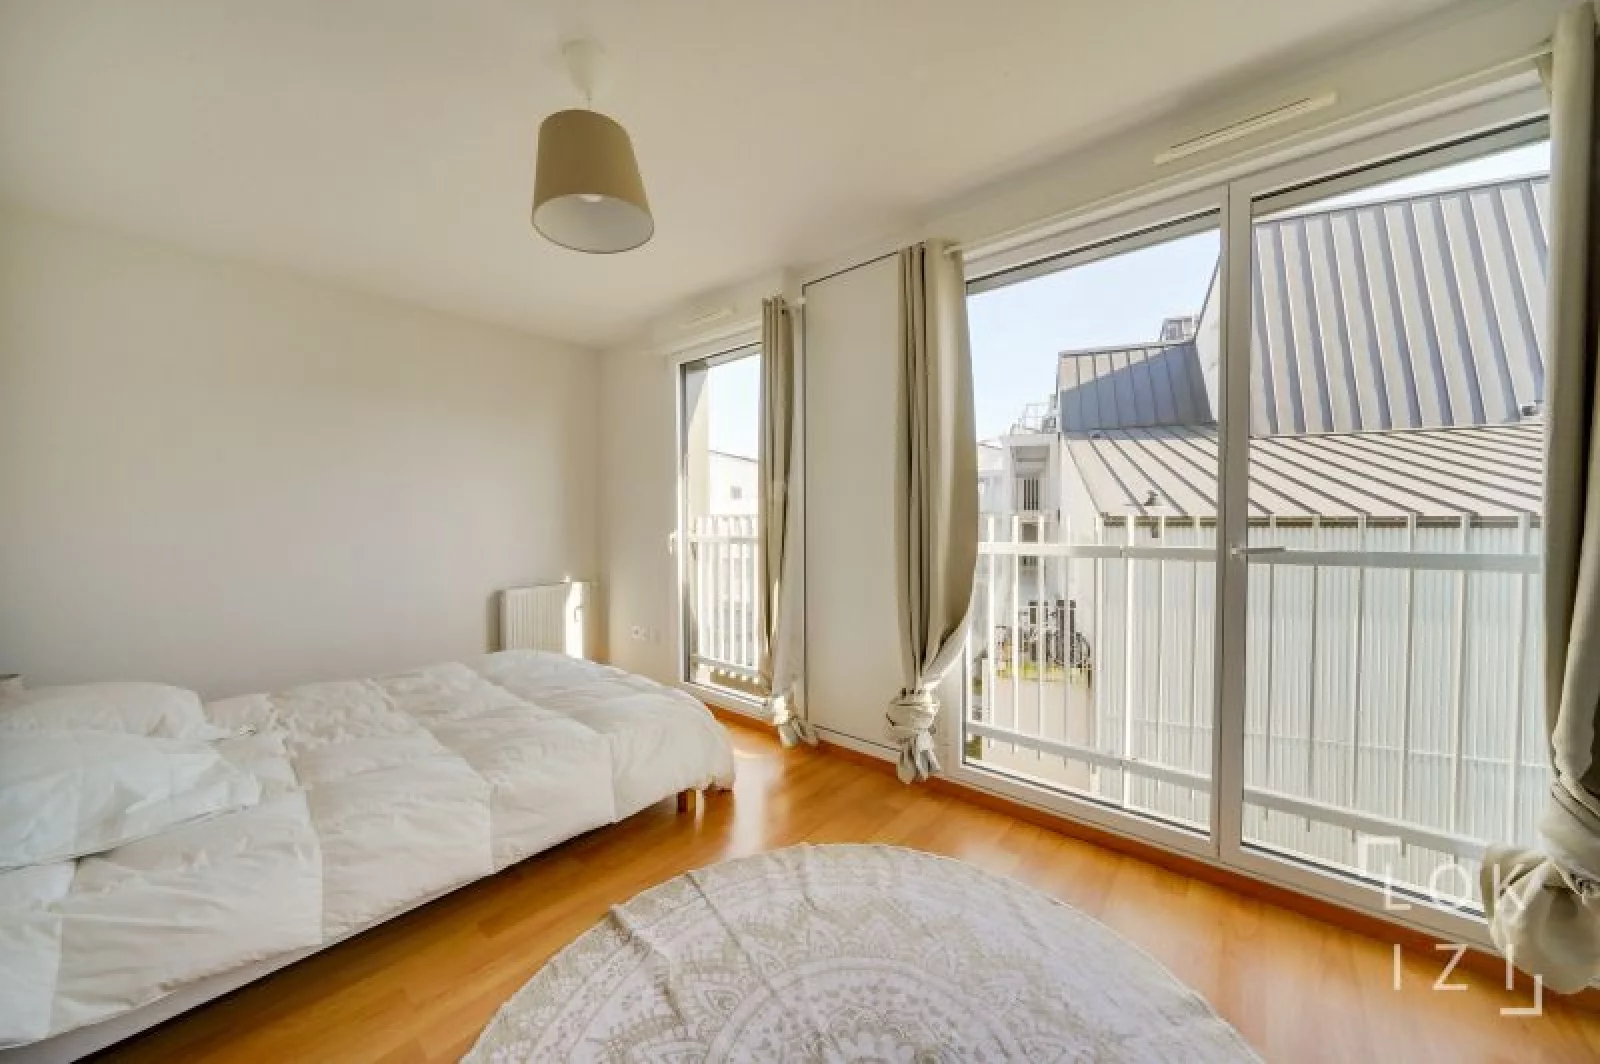 Vente appartement meublé 4 pièces 102m² (Bordeaux - Bassins à flot)